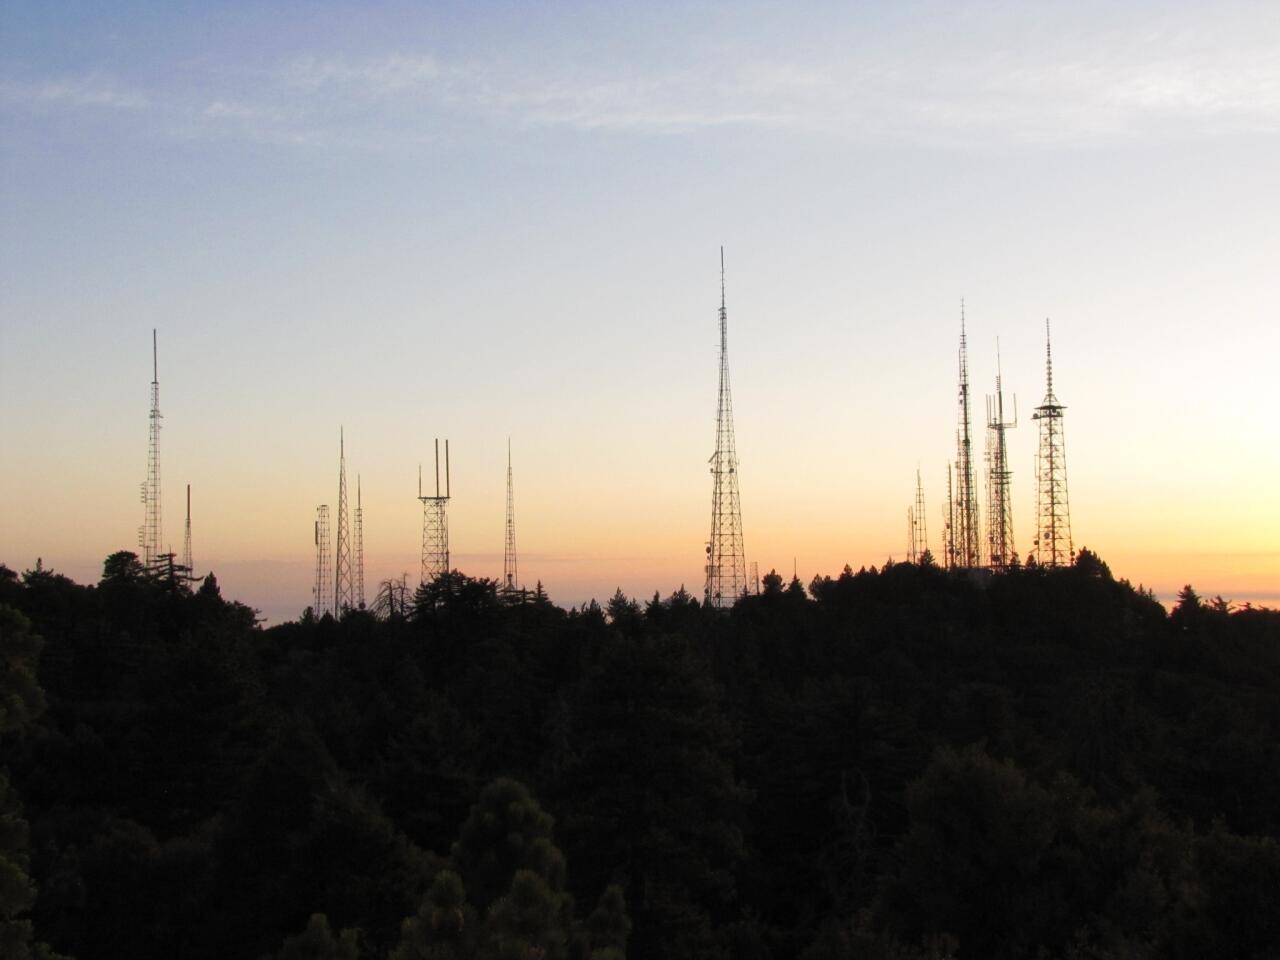 Mt. Wilson's antennas